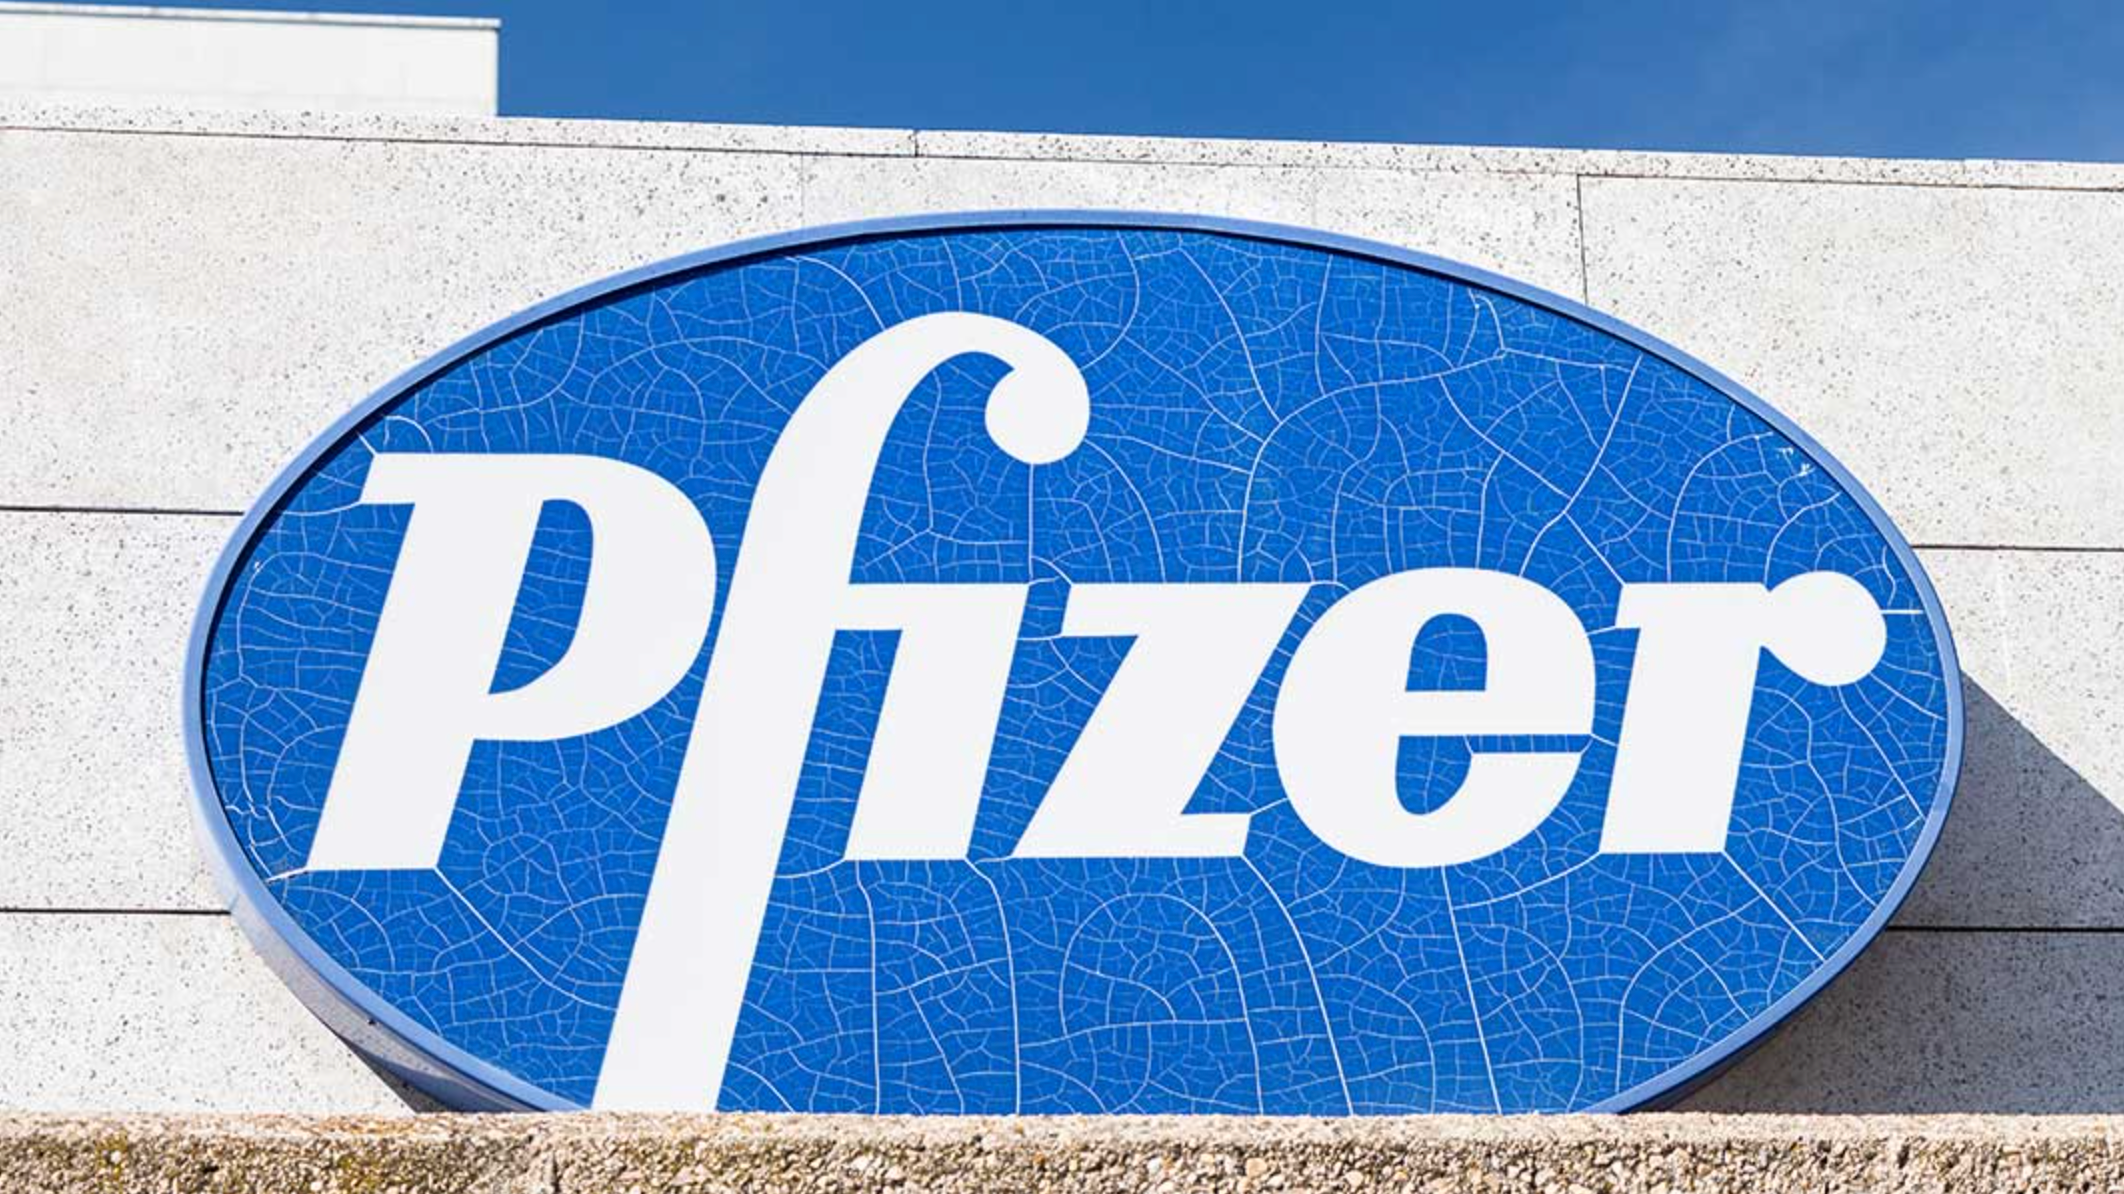 Come acquistare online le azioni Pfizer